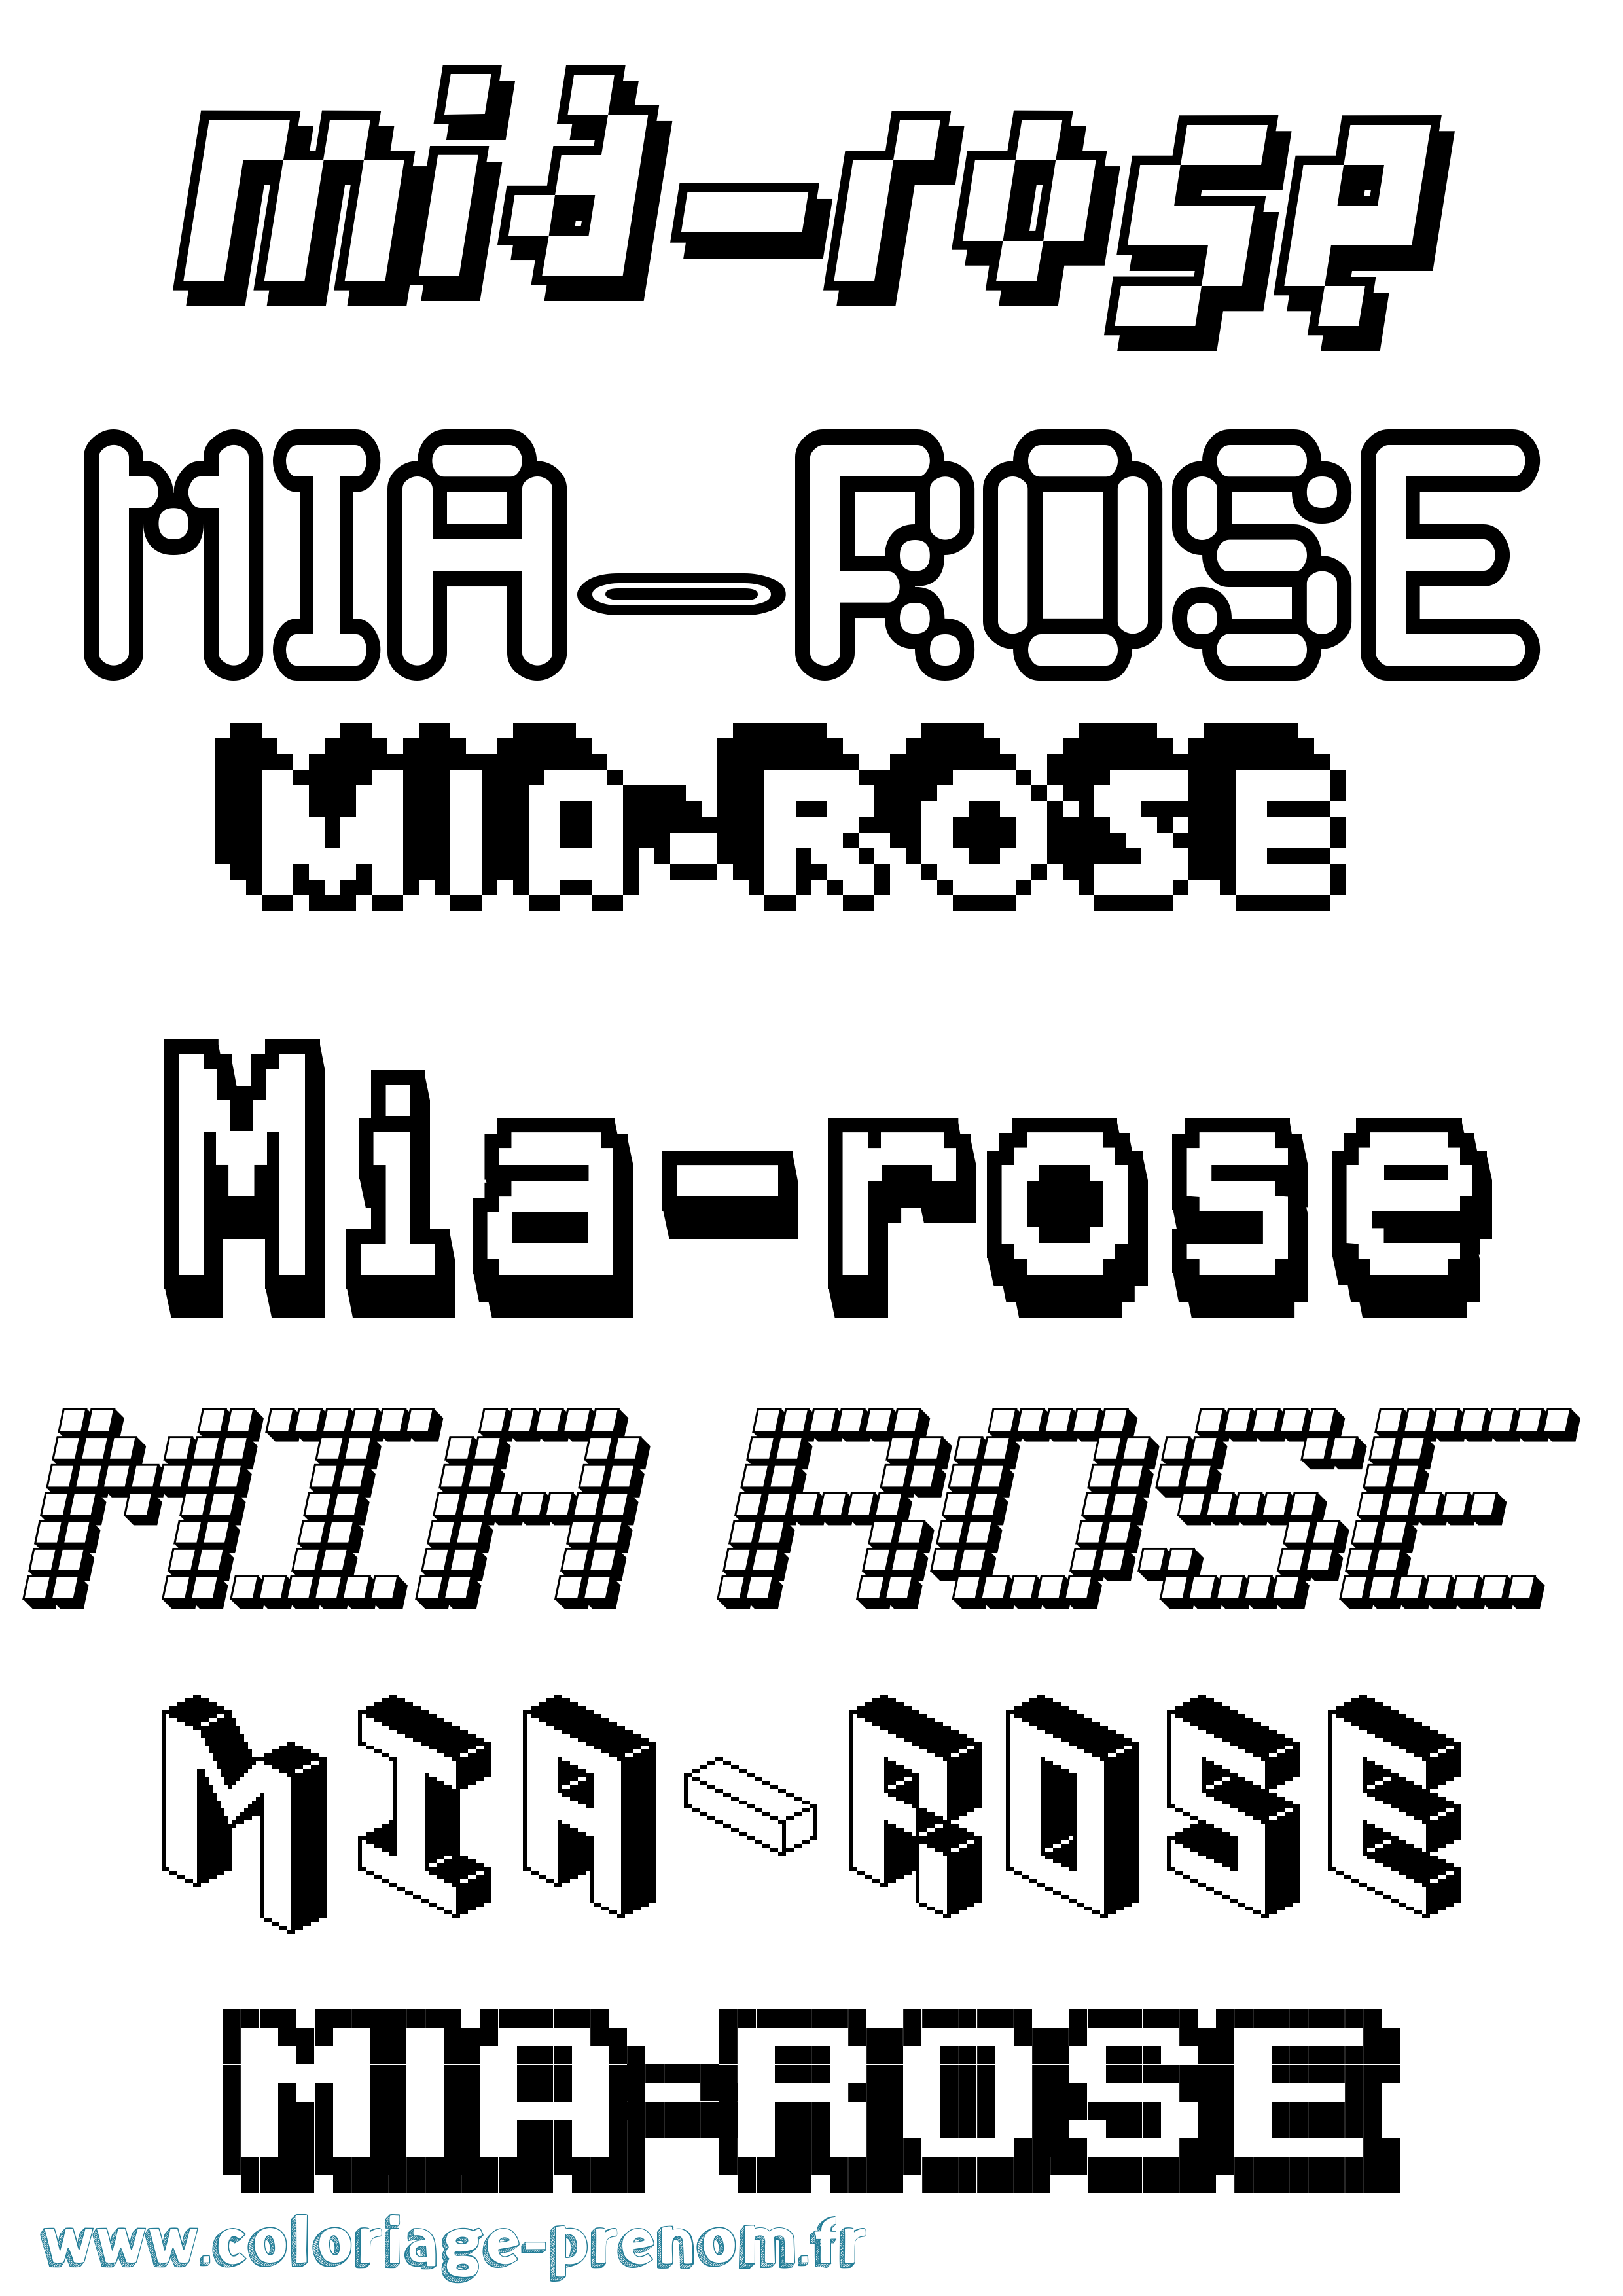 Coloriage prénom Mia-Rose Pixel